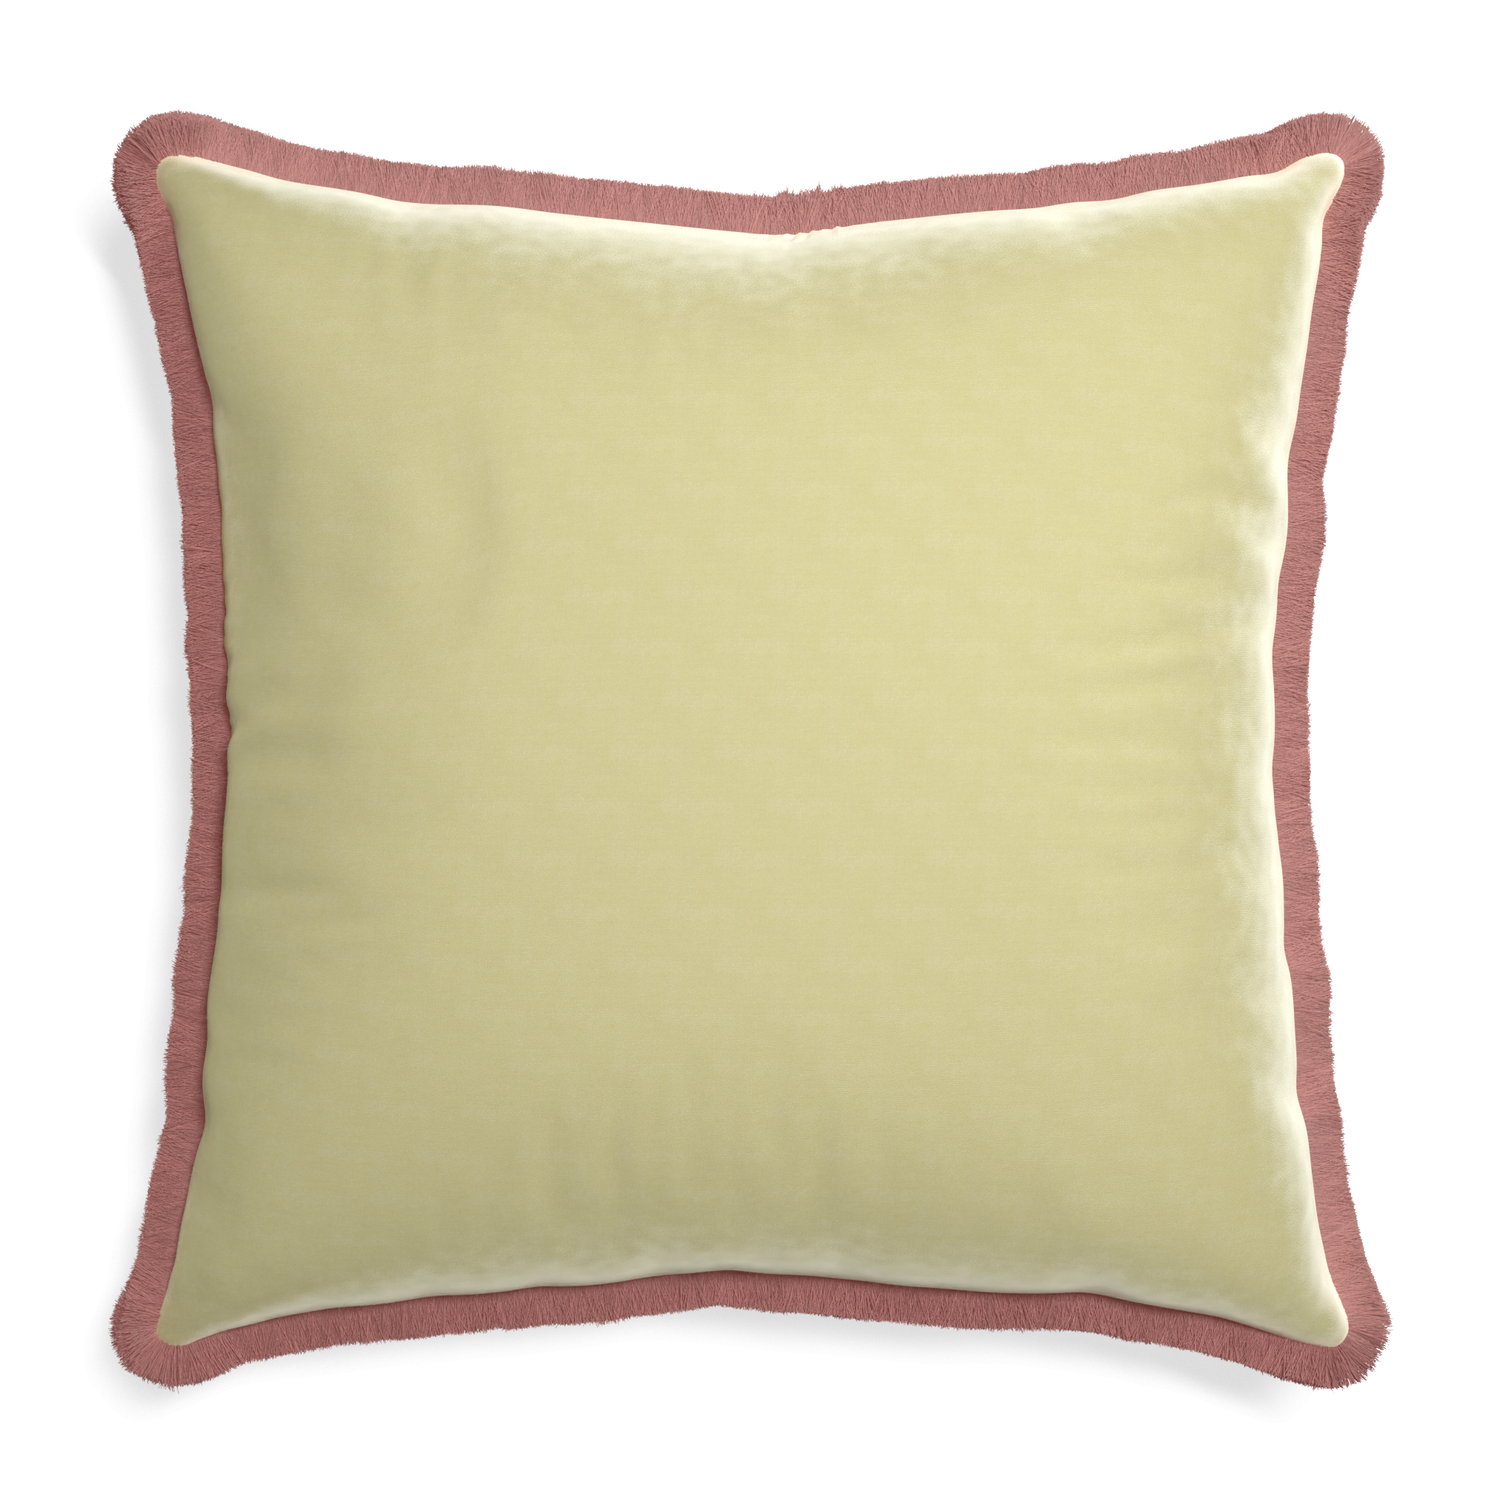 Euro-sham pear velvet custom pillow with d fringe on white background